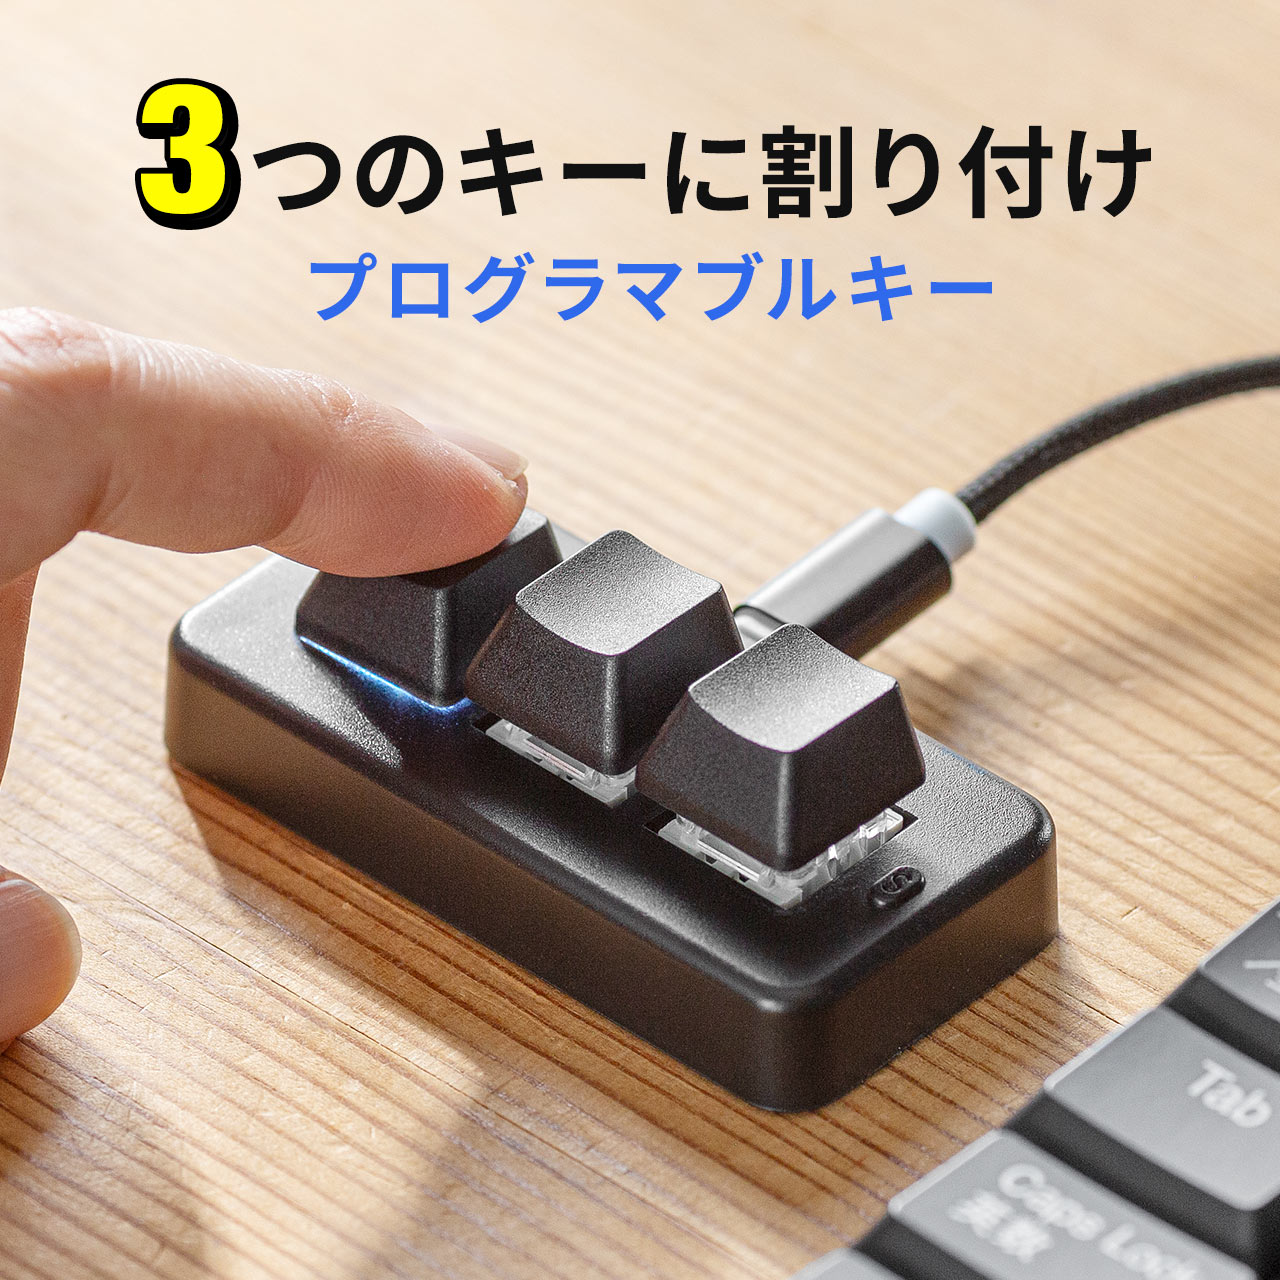 プログラマブルキーボード ミニ3キー 片手キーボード 左手デバイス ゲーミングキーボード メカニカル 青軸 割付 日本語取扱説明書付き 有線接続 400-SKB075